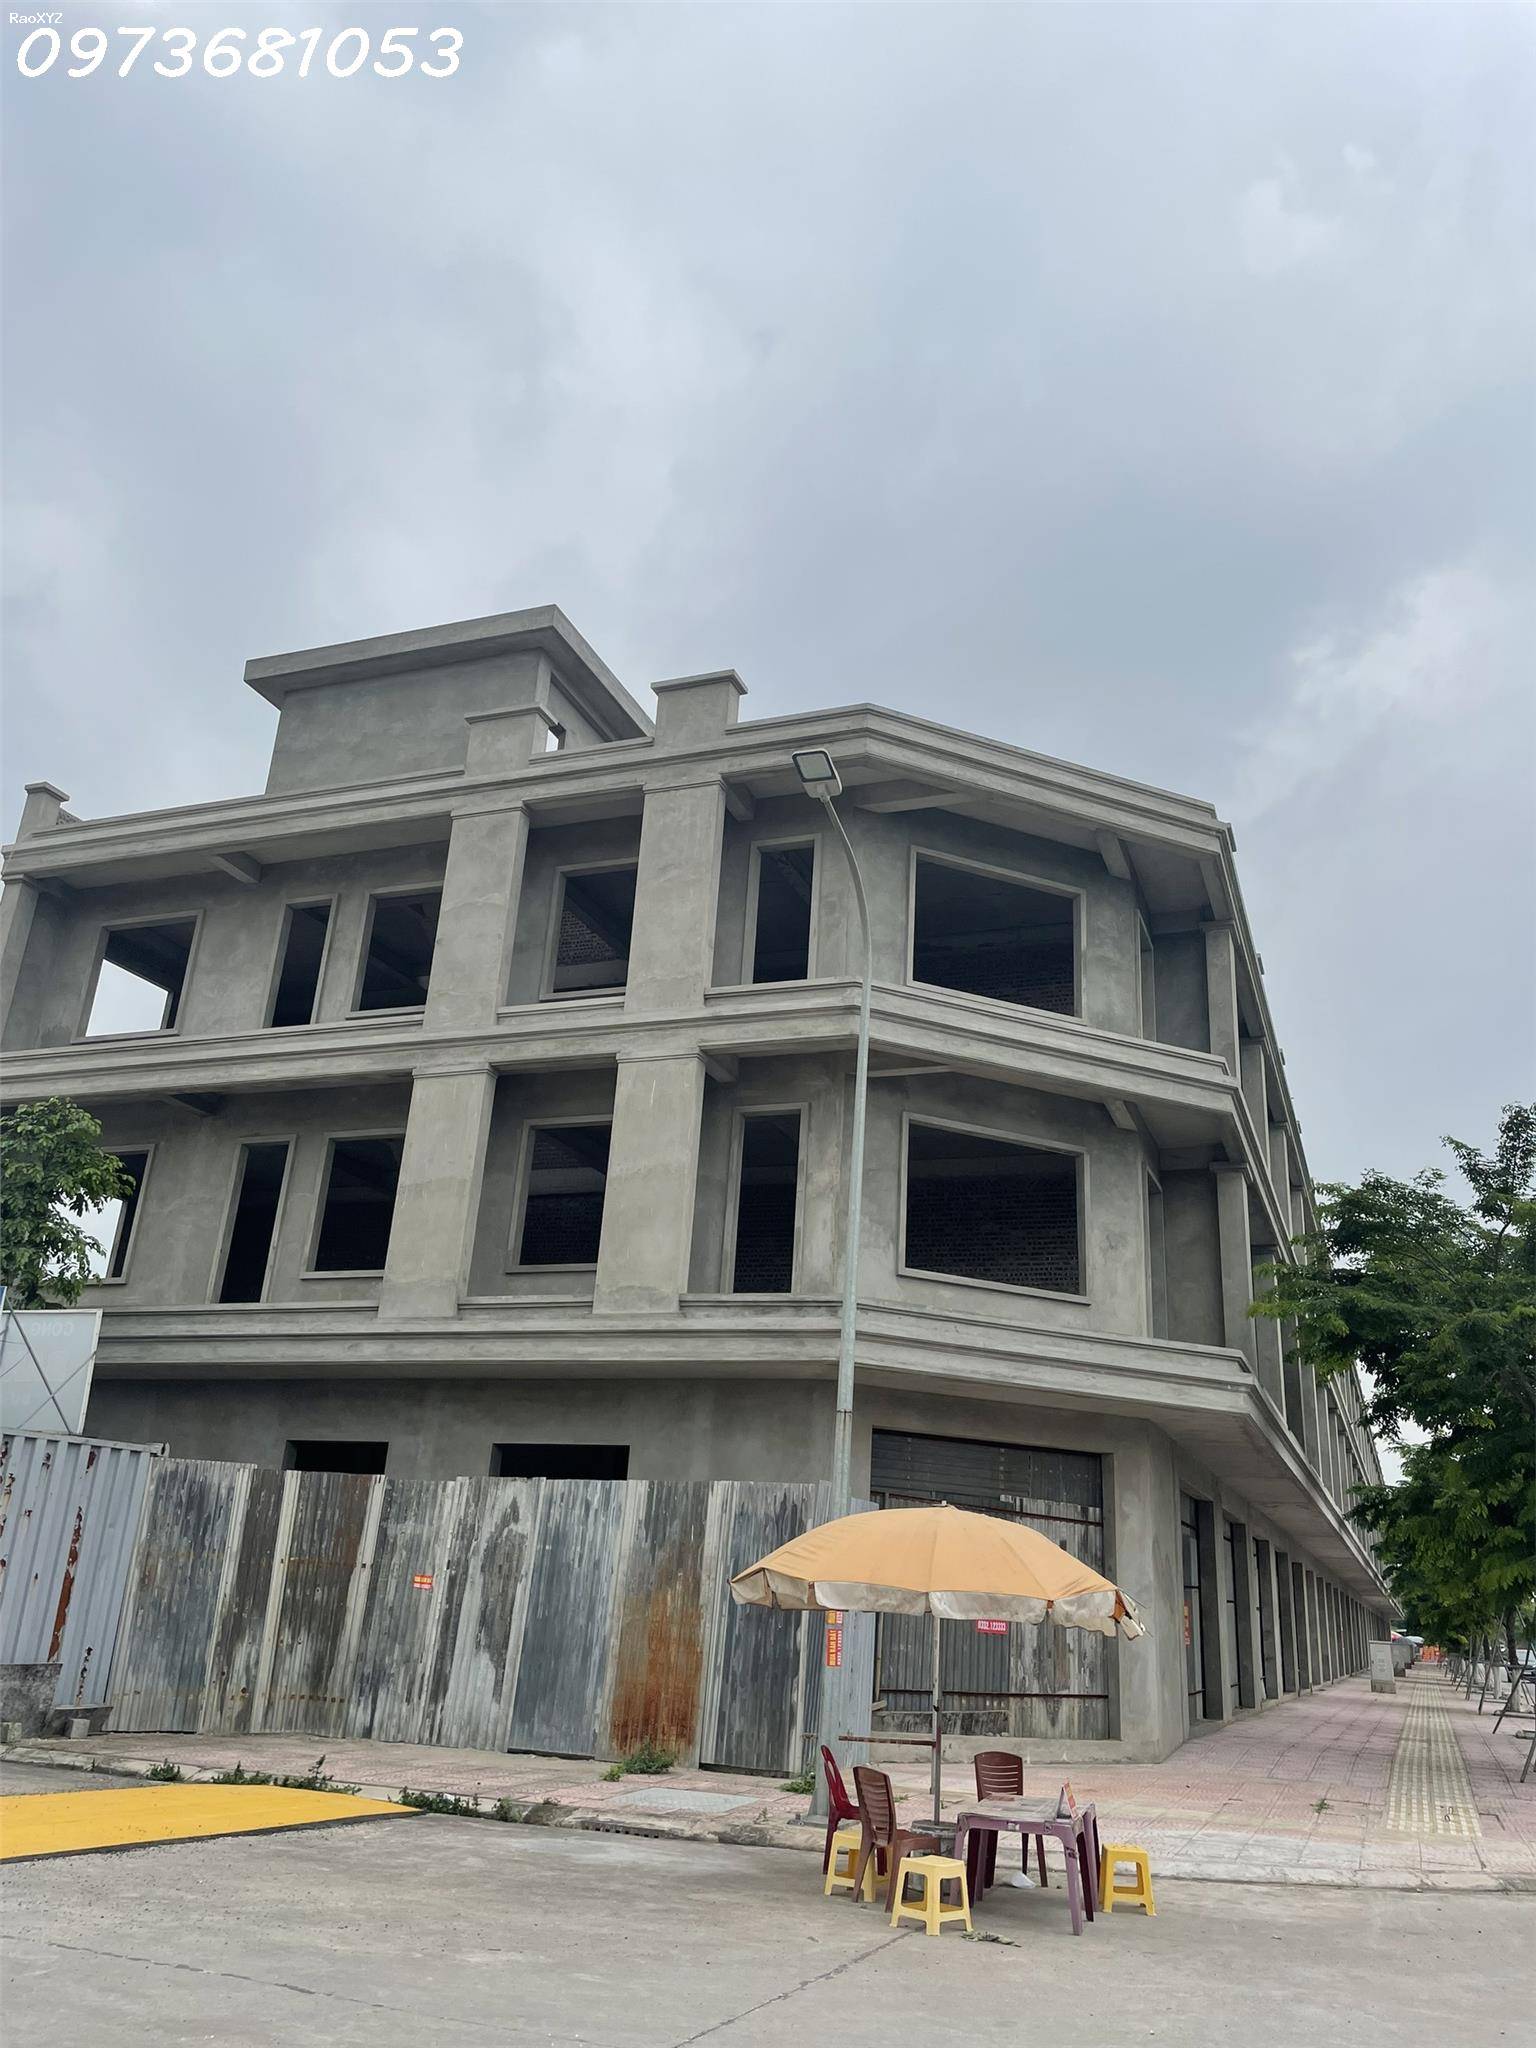 Bán nhà 3 tầng sổ lâu dài 100m2 mặt đường Nguyễn Văn Cừ, Phù Khê, thành phố Từ Sơn